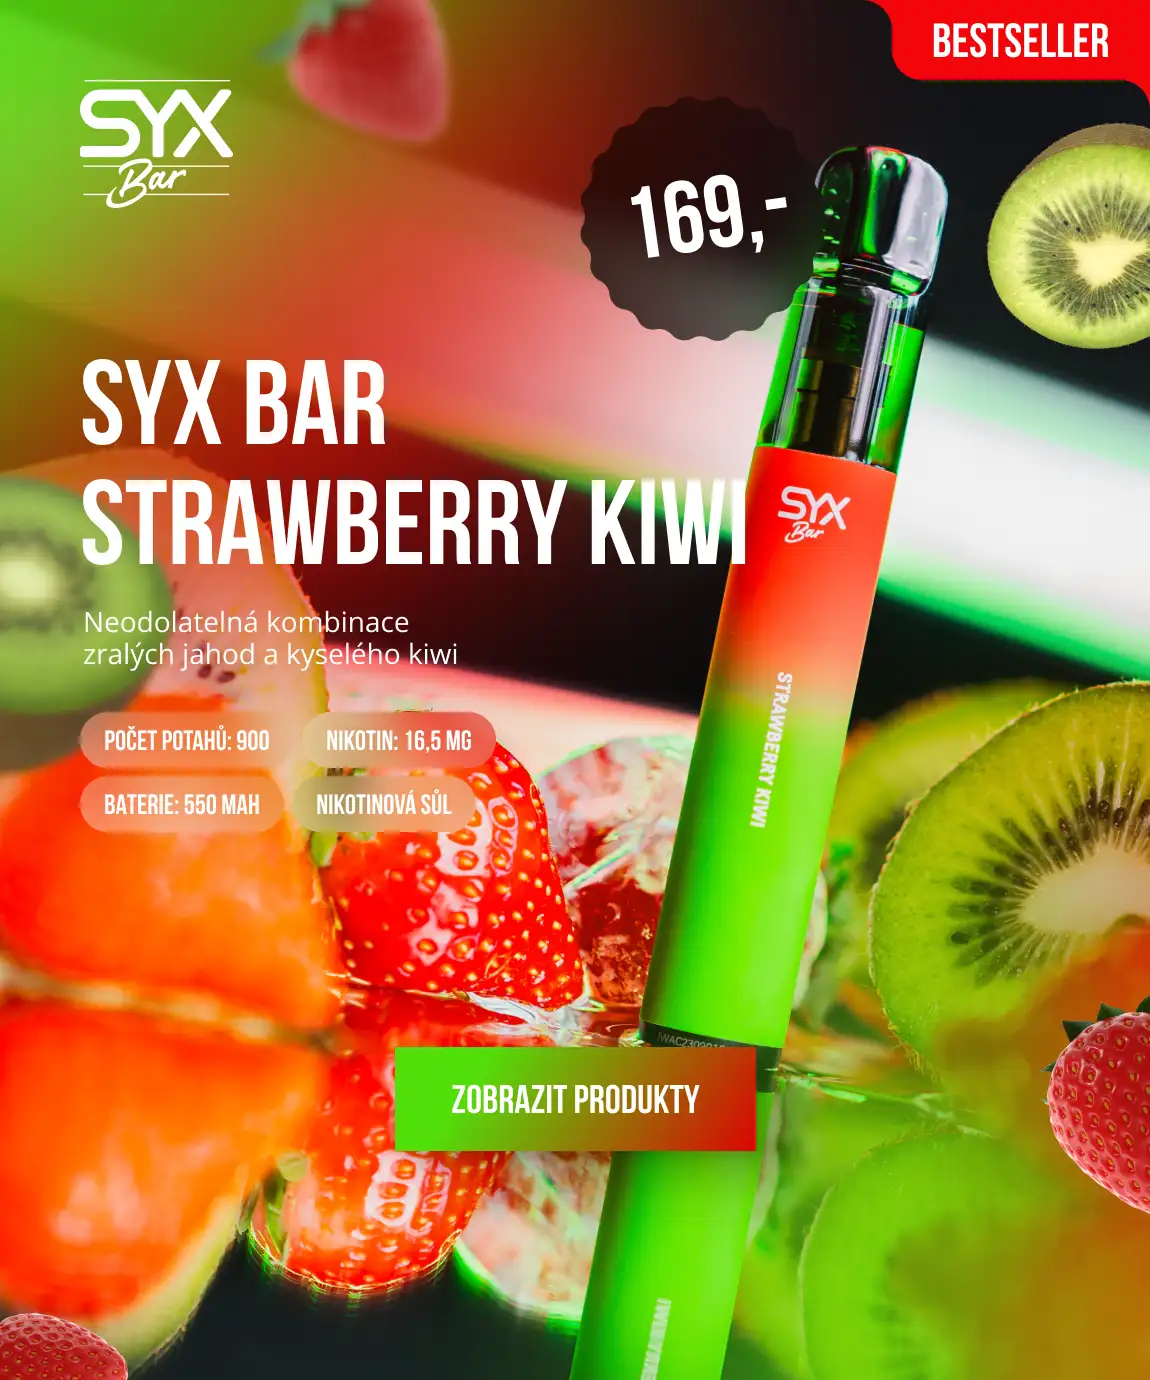 SYX BAR STRAWBERRY KIWI: Neodolatelná kombinace zralých jahod a kyselého kiwi